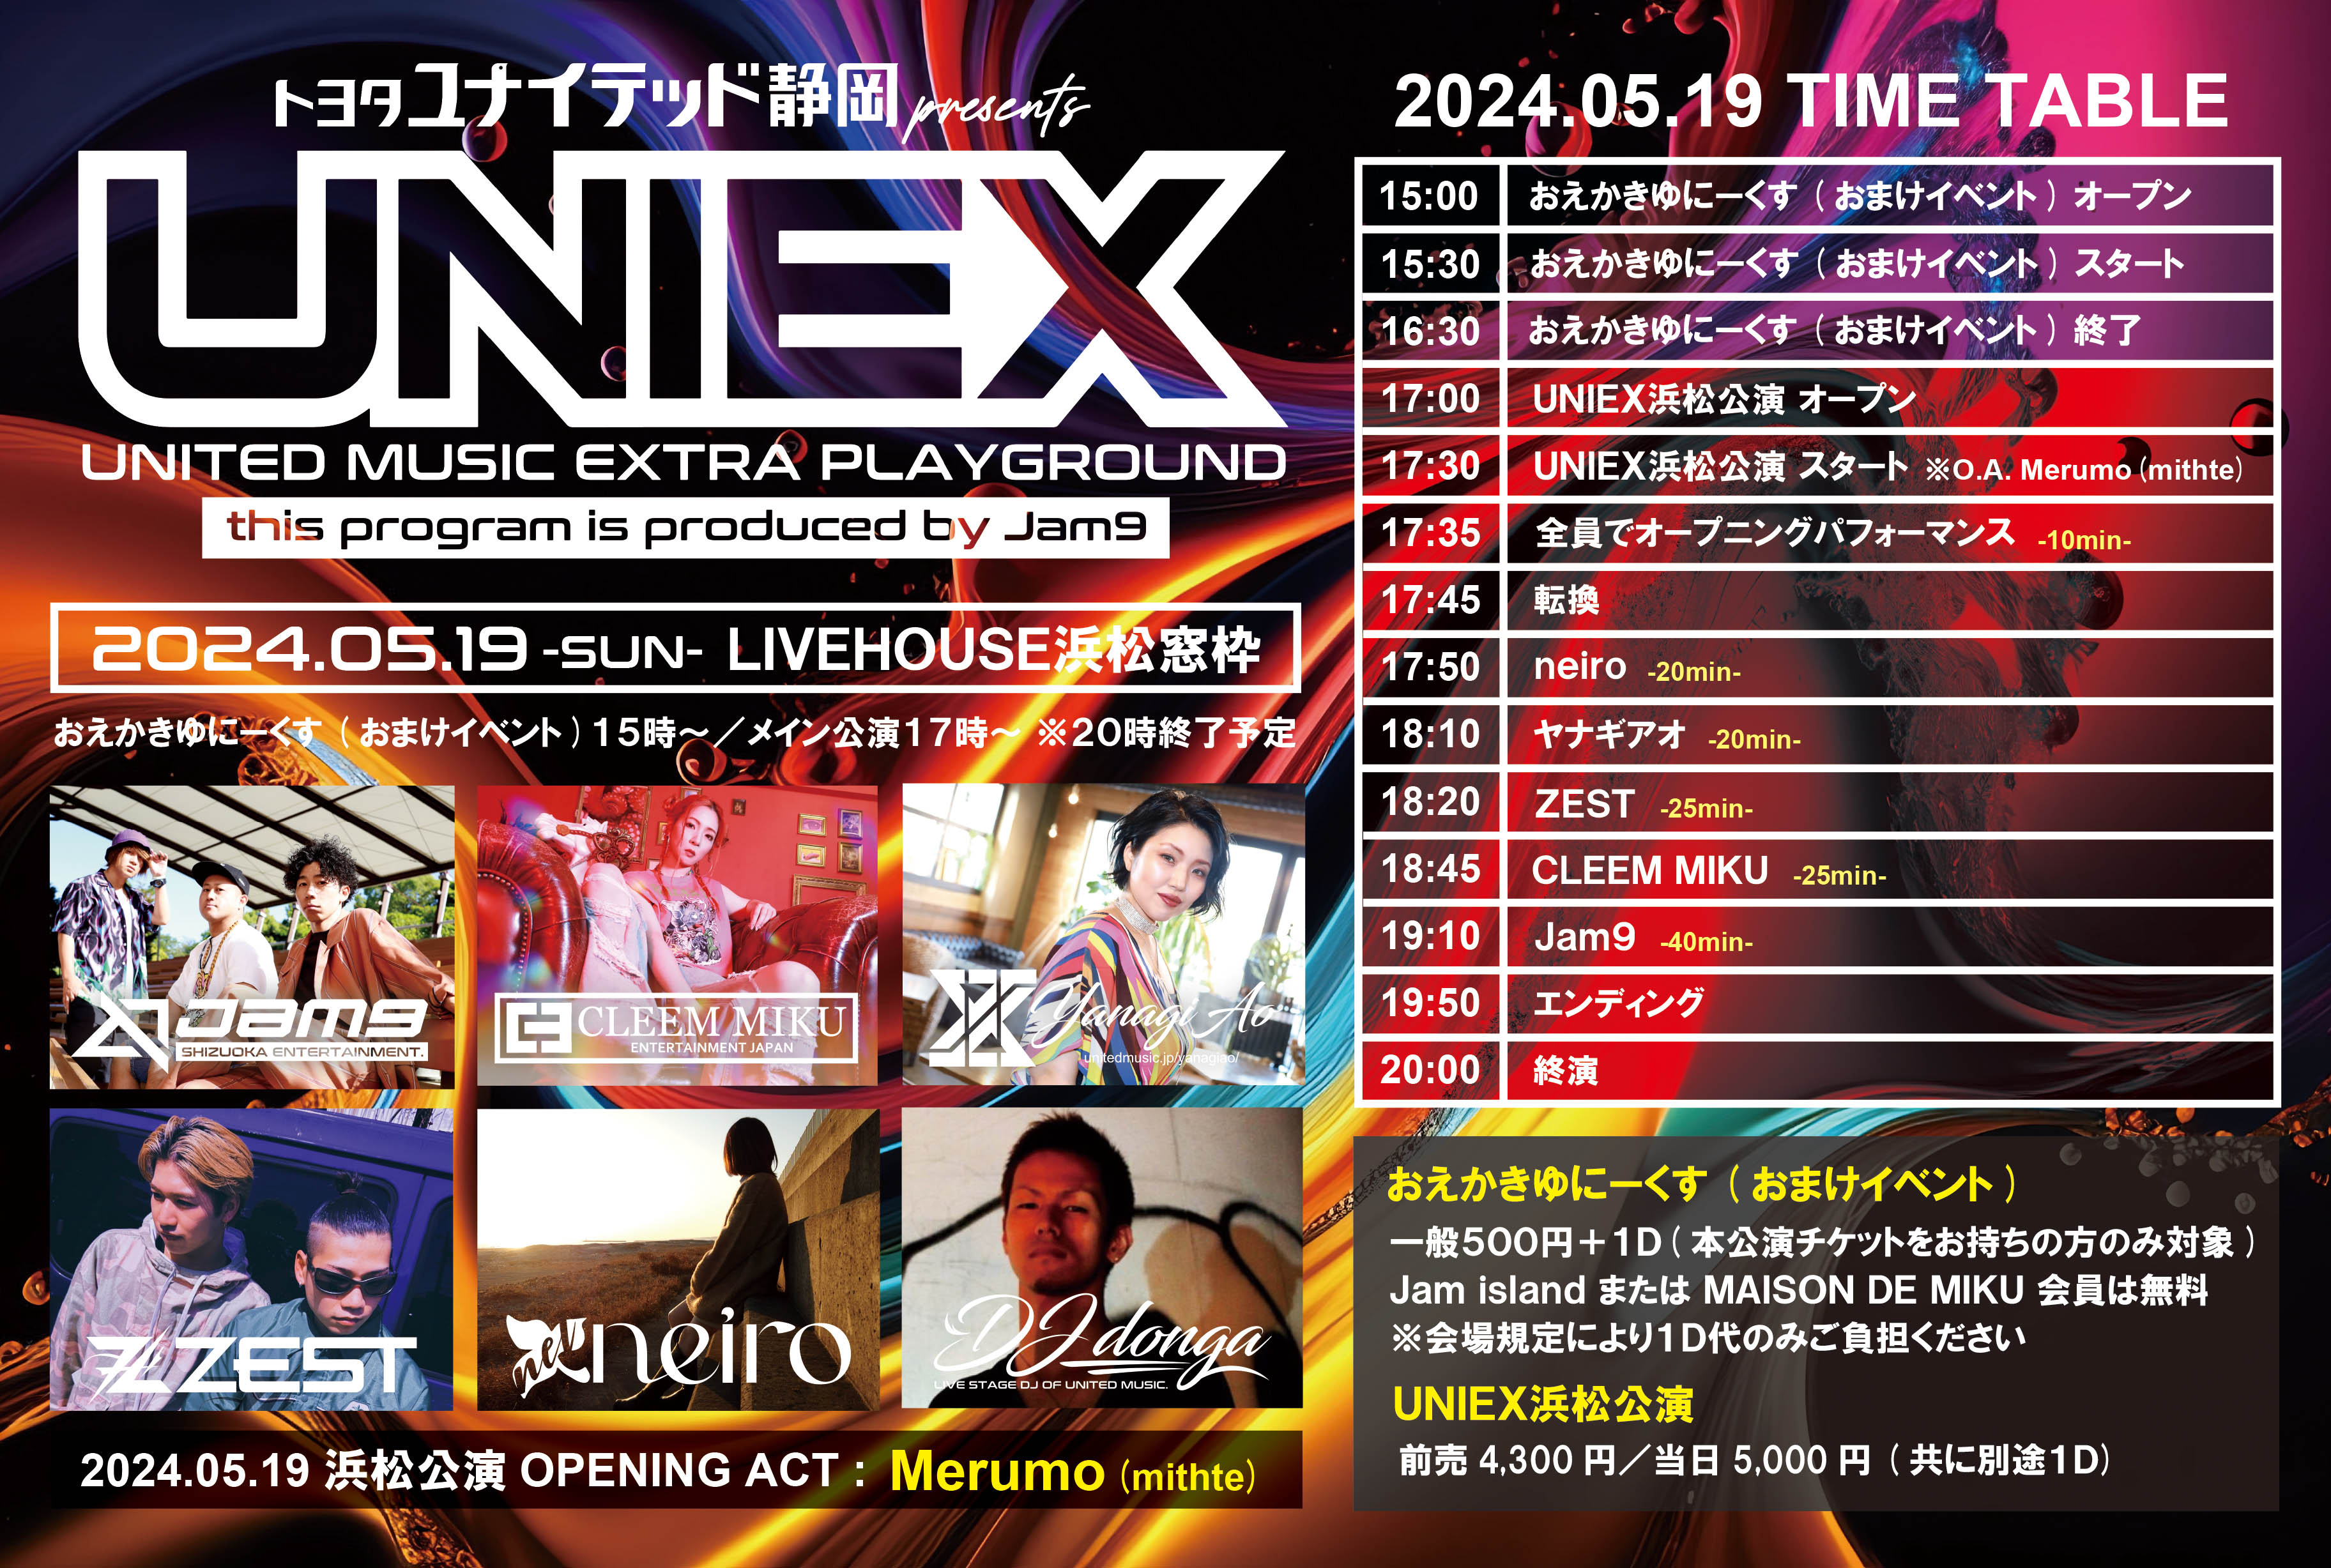 トヨタユナイテッド静岡presents 「UNIEX」浜松公演